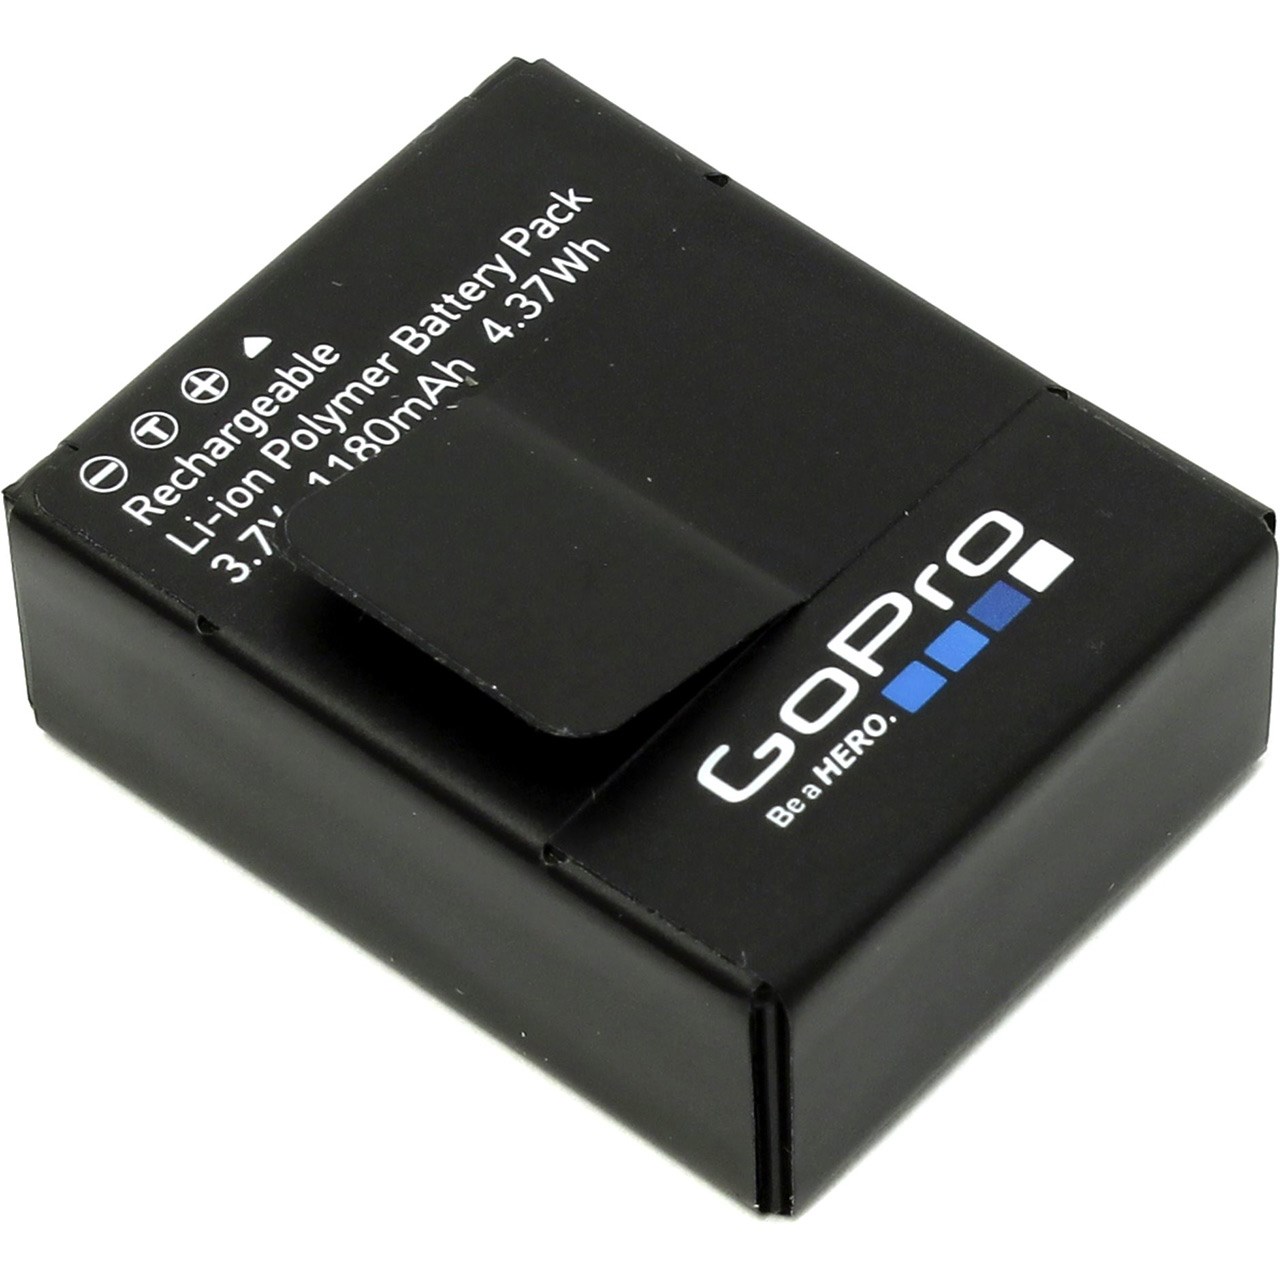 باتری لیتیومی گوپرو مناسب برای دوربین های گوپرو HERO 3